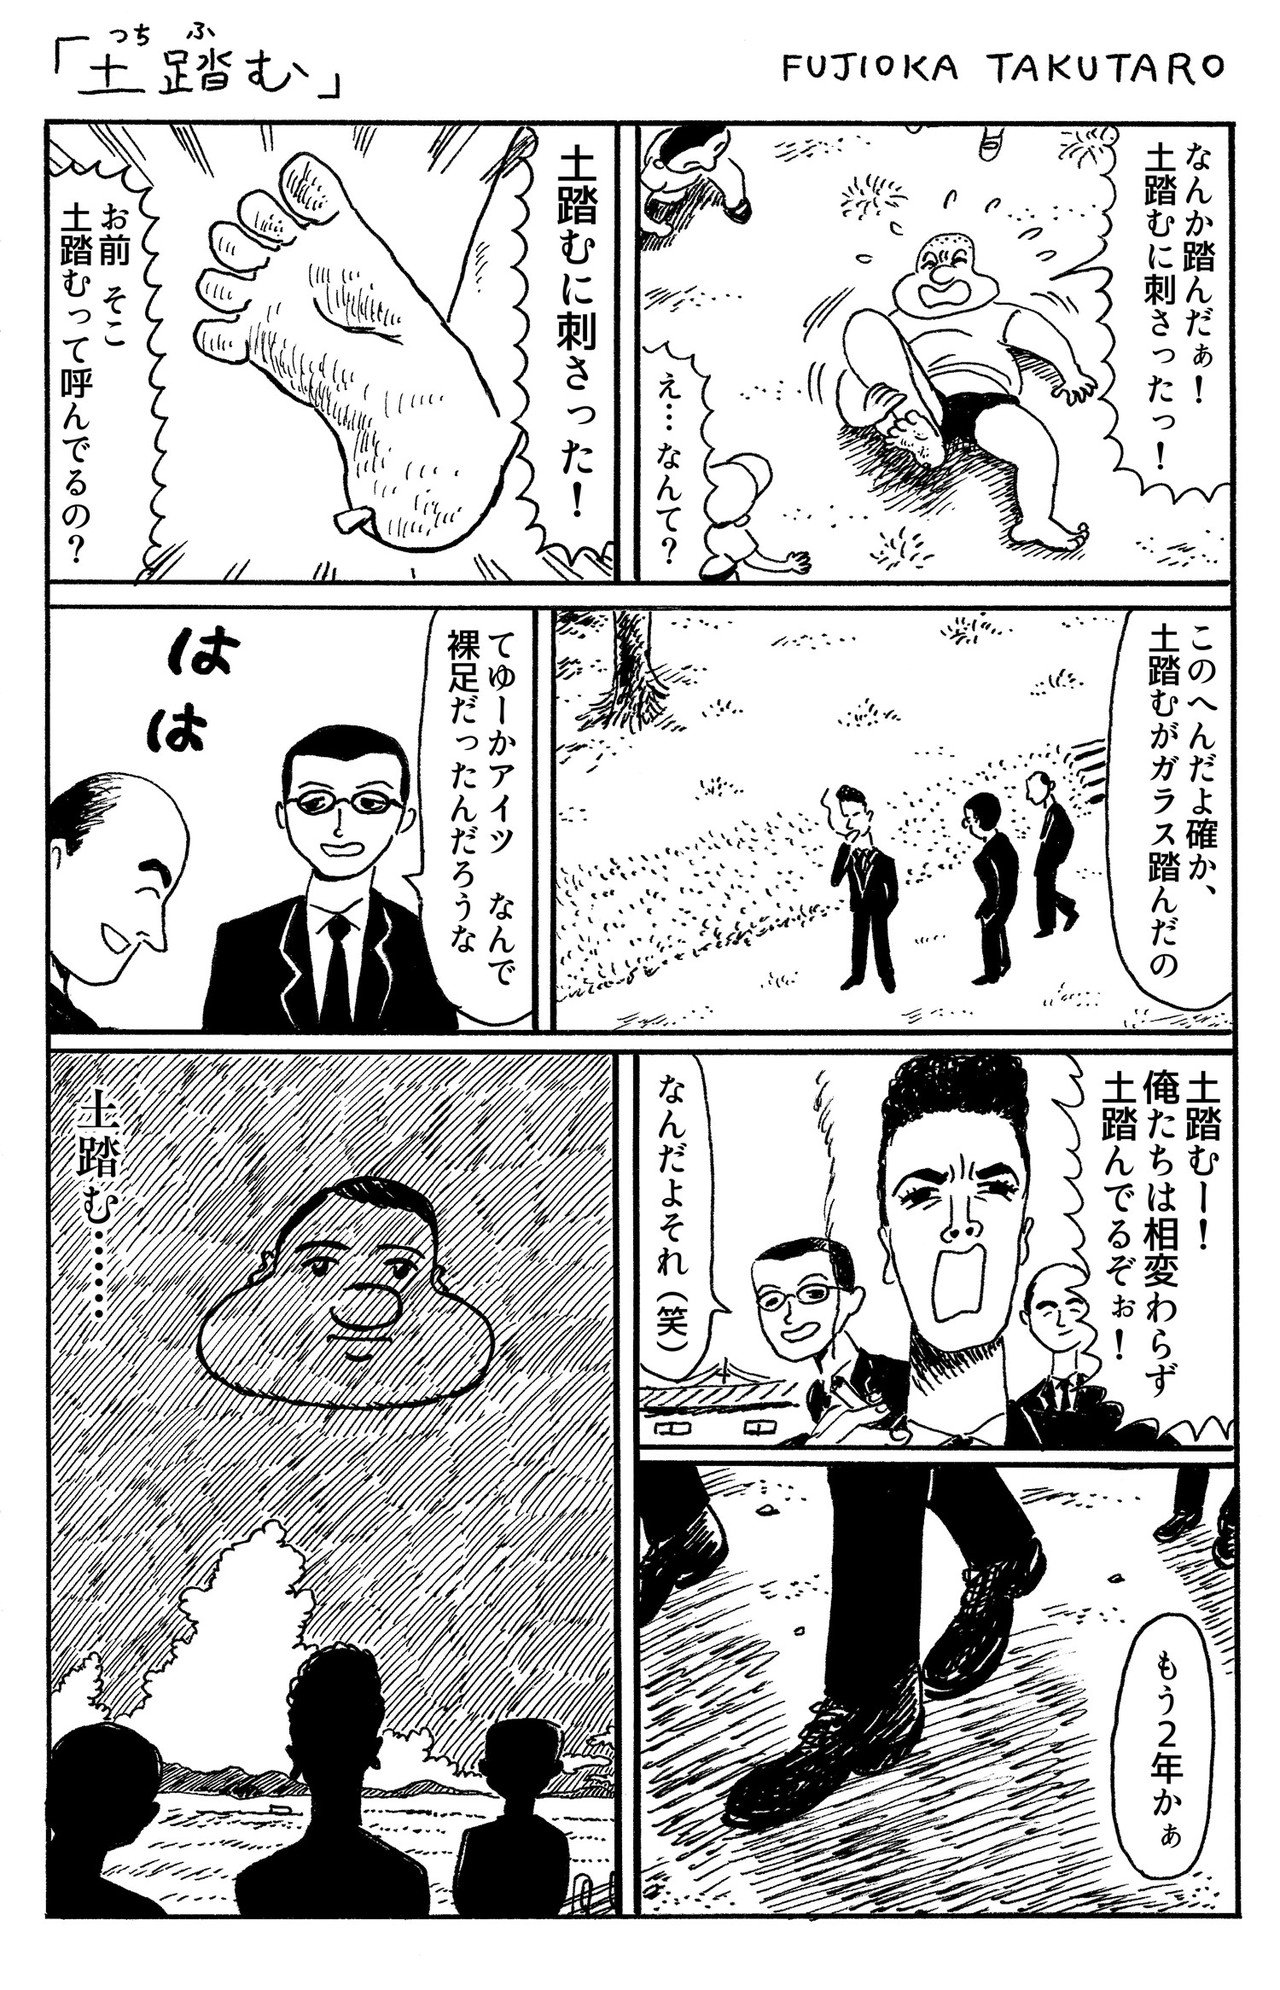 20180716_1ページ漫画_土踏む__R